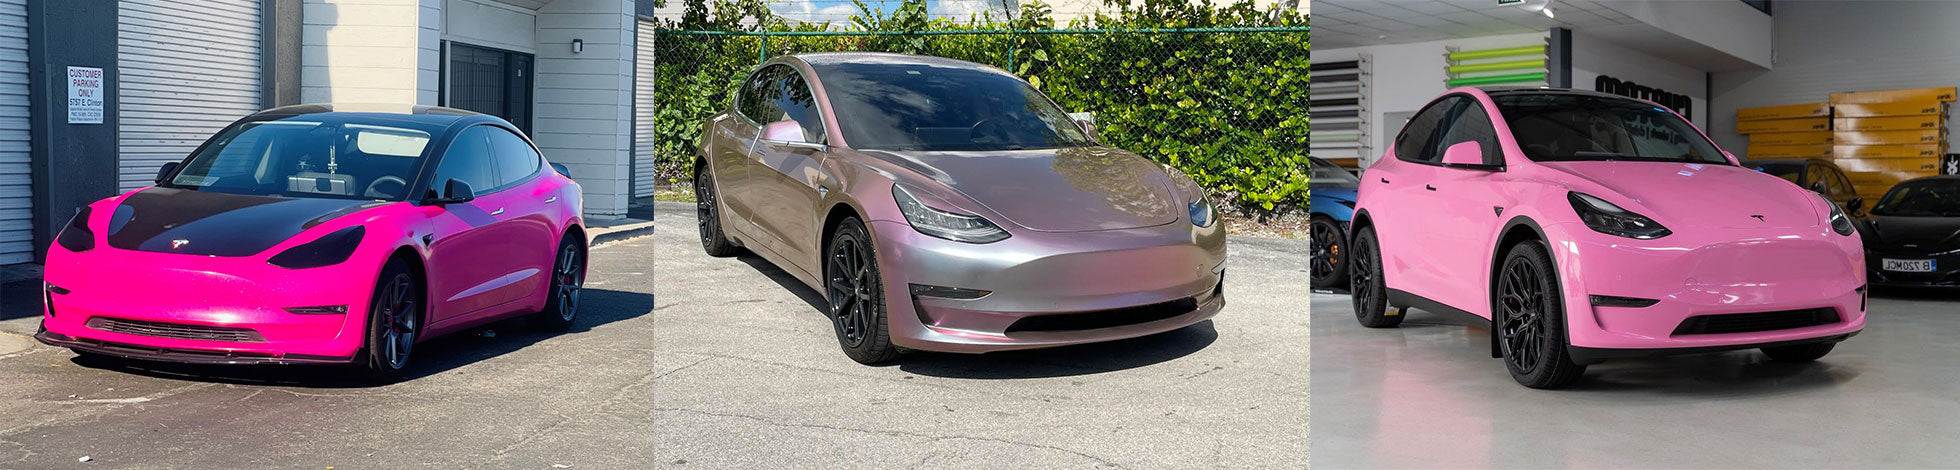 Pink Tesla Wraps